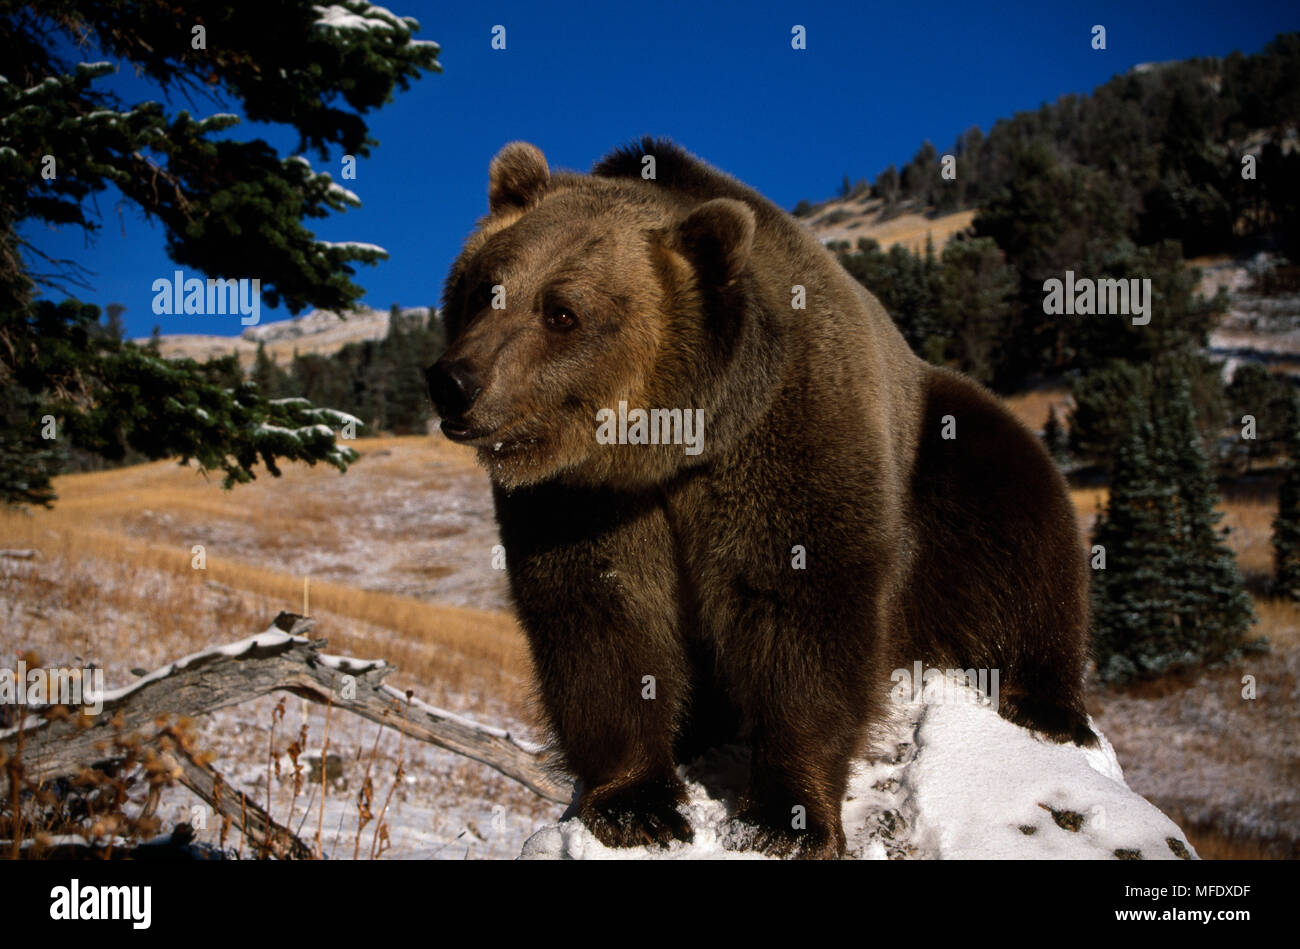 AMERICAN marrone o orso grizzly (Ursus arctos horribilis) permanente sulla roccia, Canada. Condizioni controllate. Foto Stock